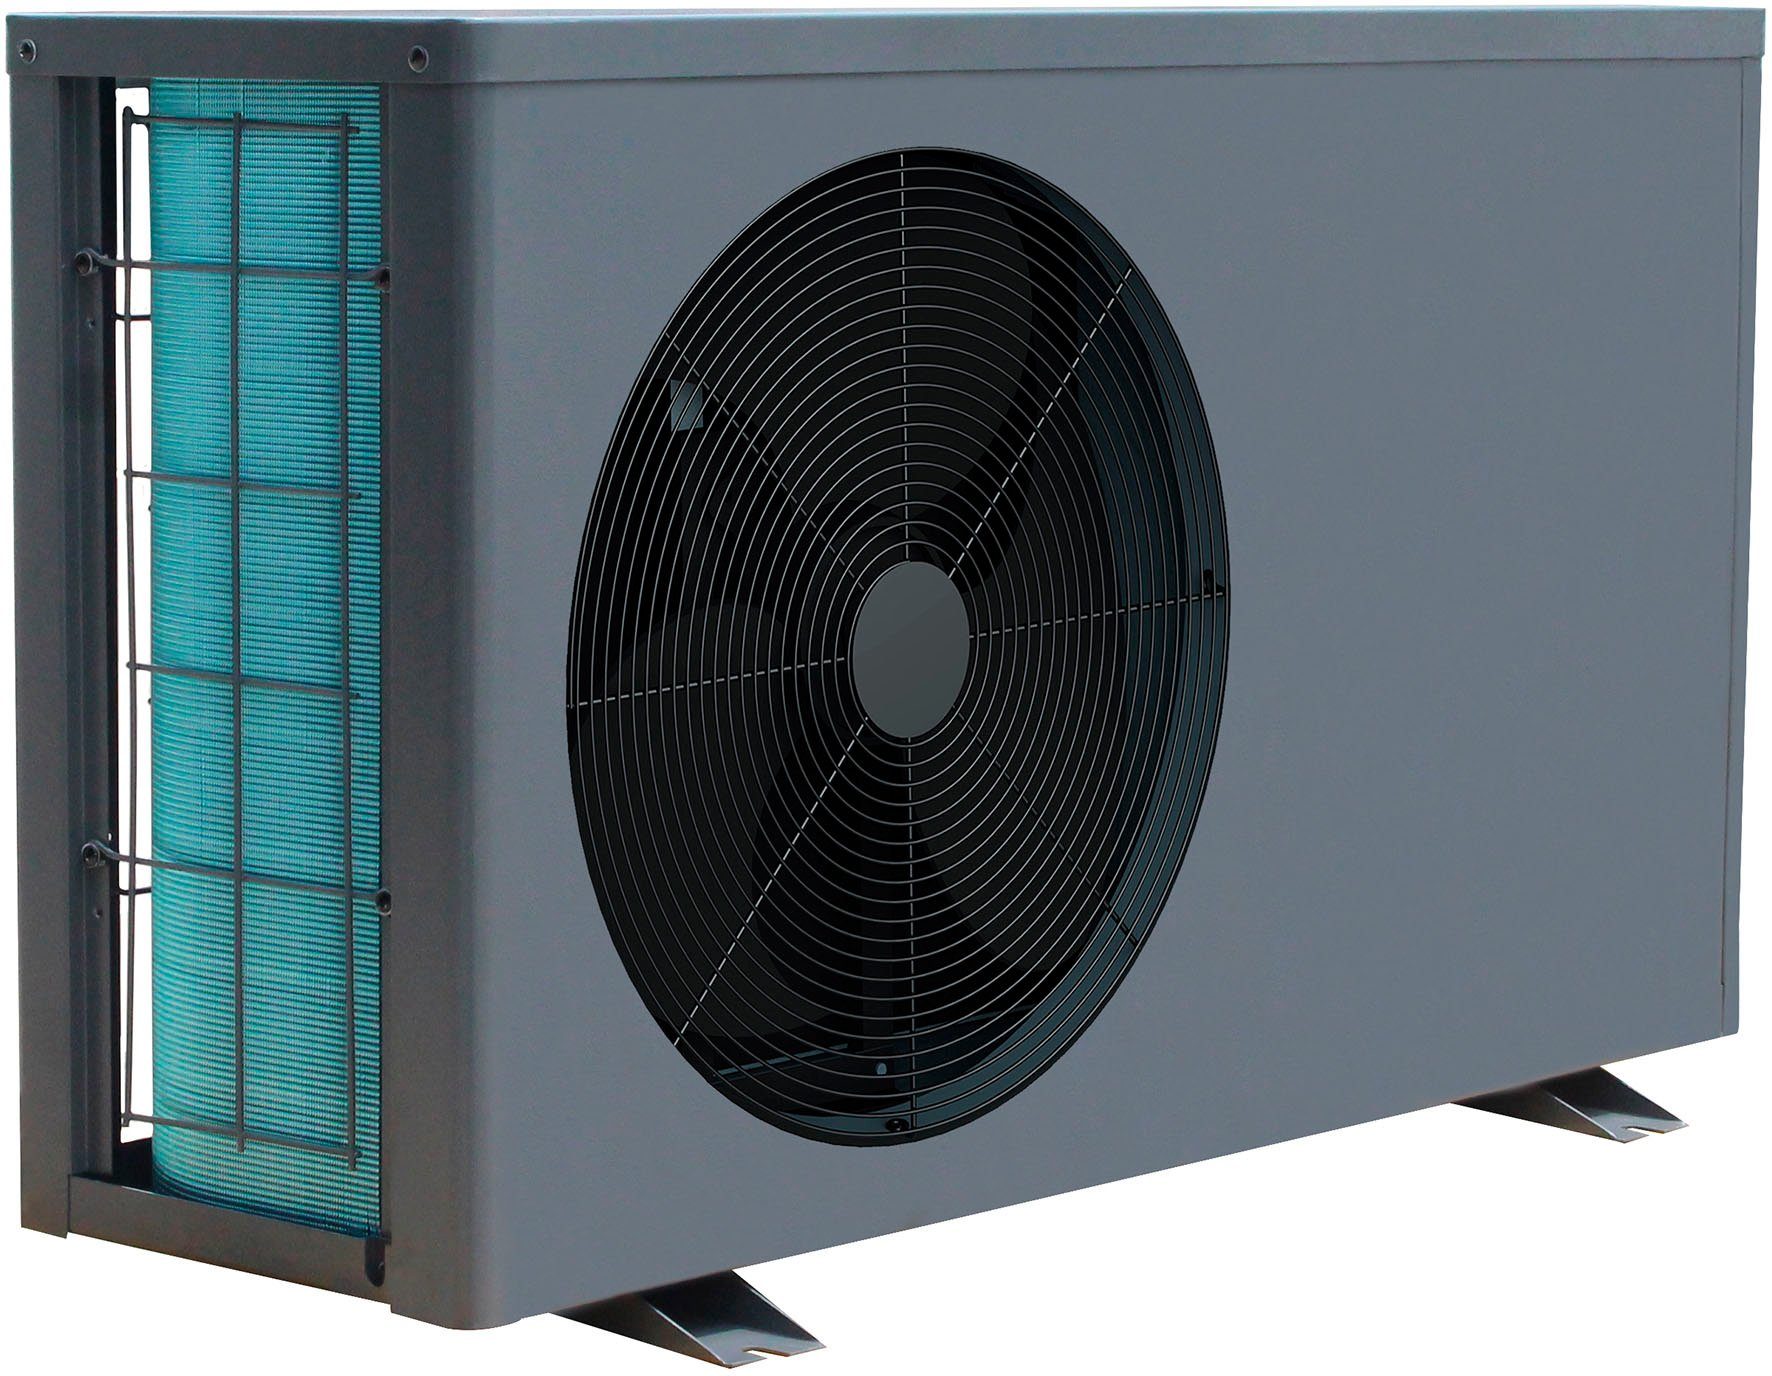 Ubbink Pool-Wärmepumpe Heatermax Inverter 20, 3 Betriebsarten: Silent-, Smart- und Power Mode